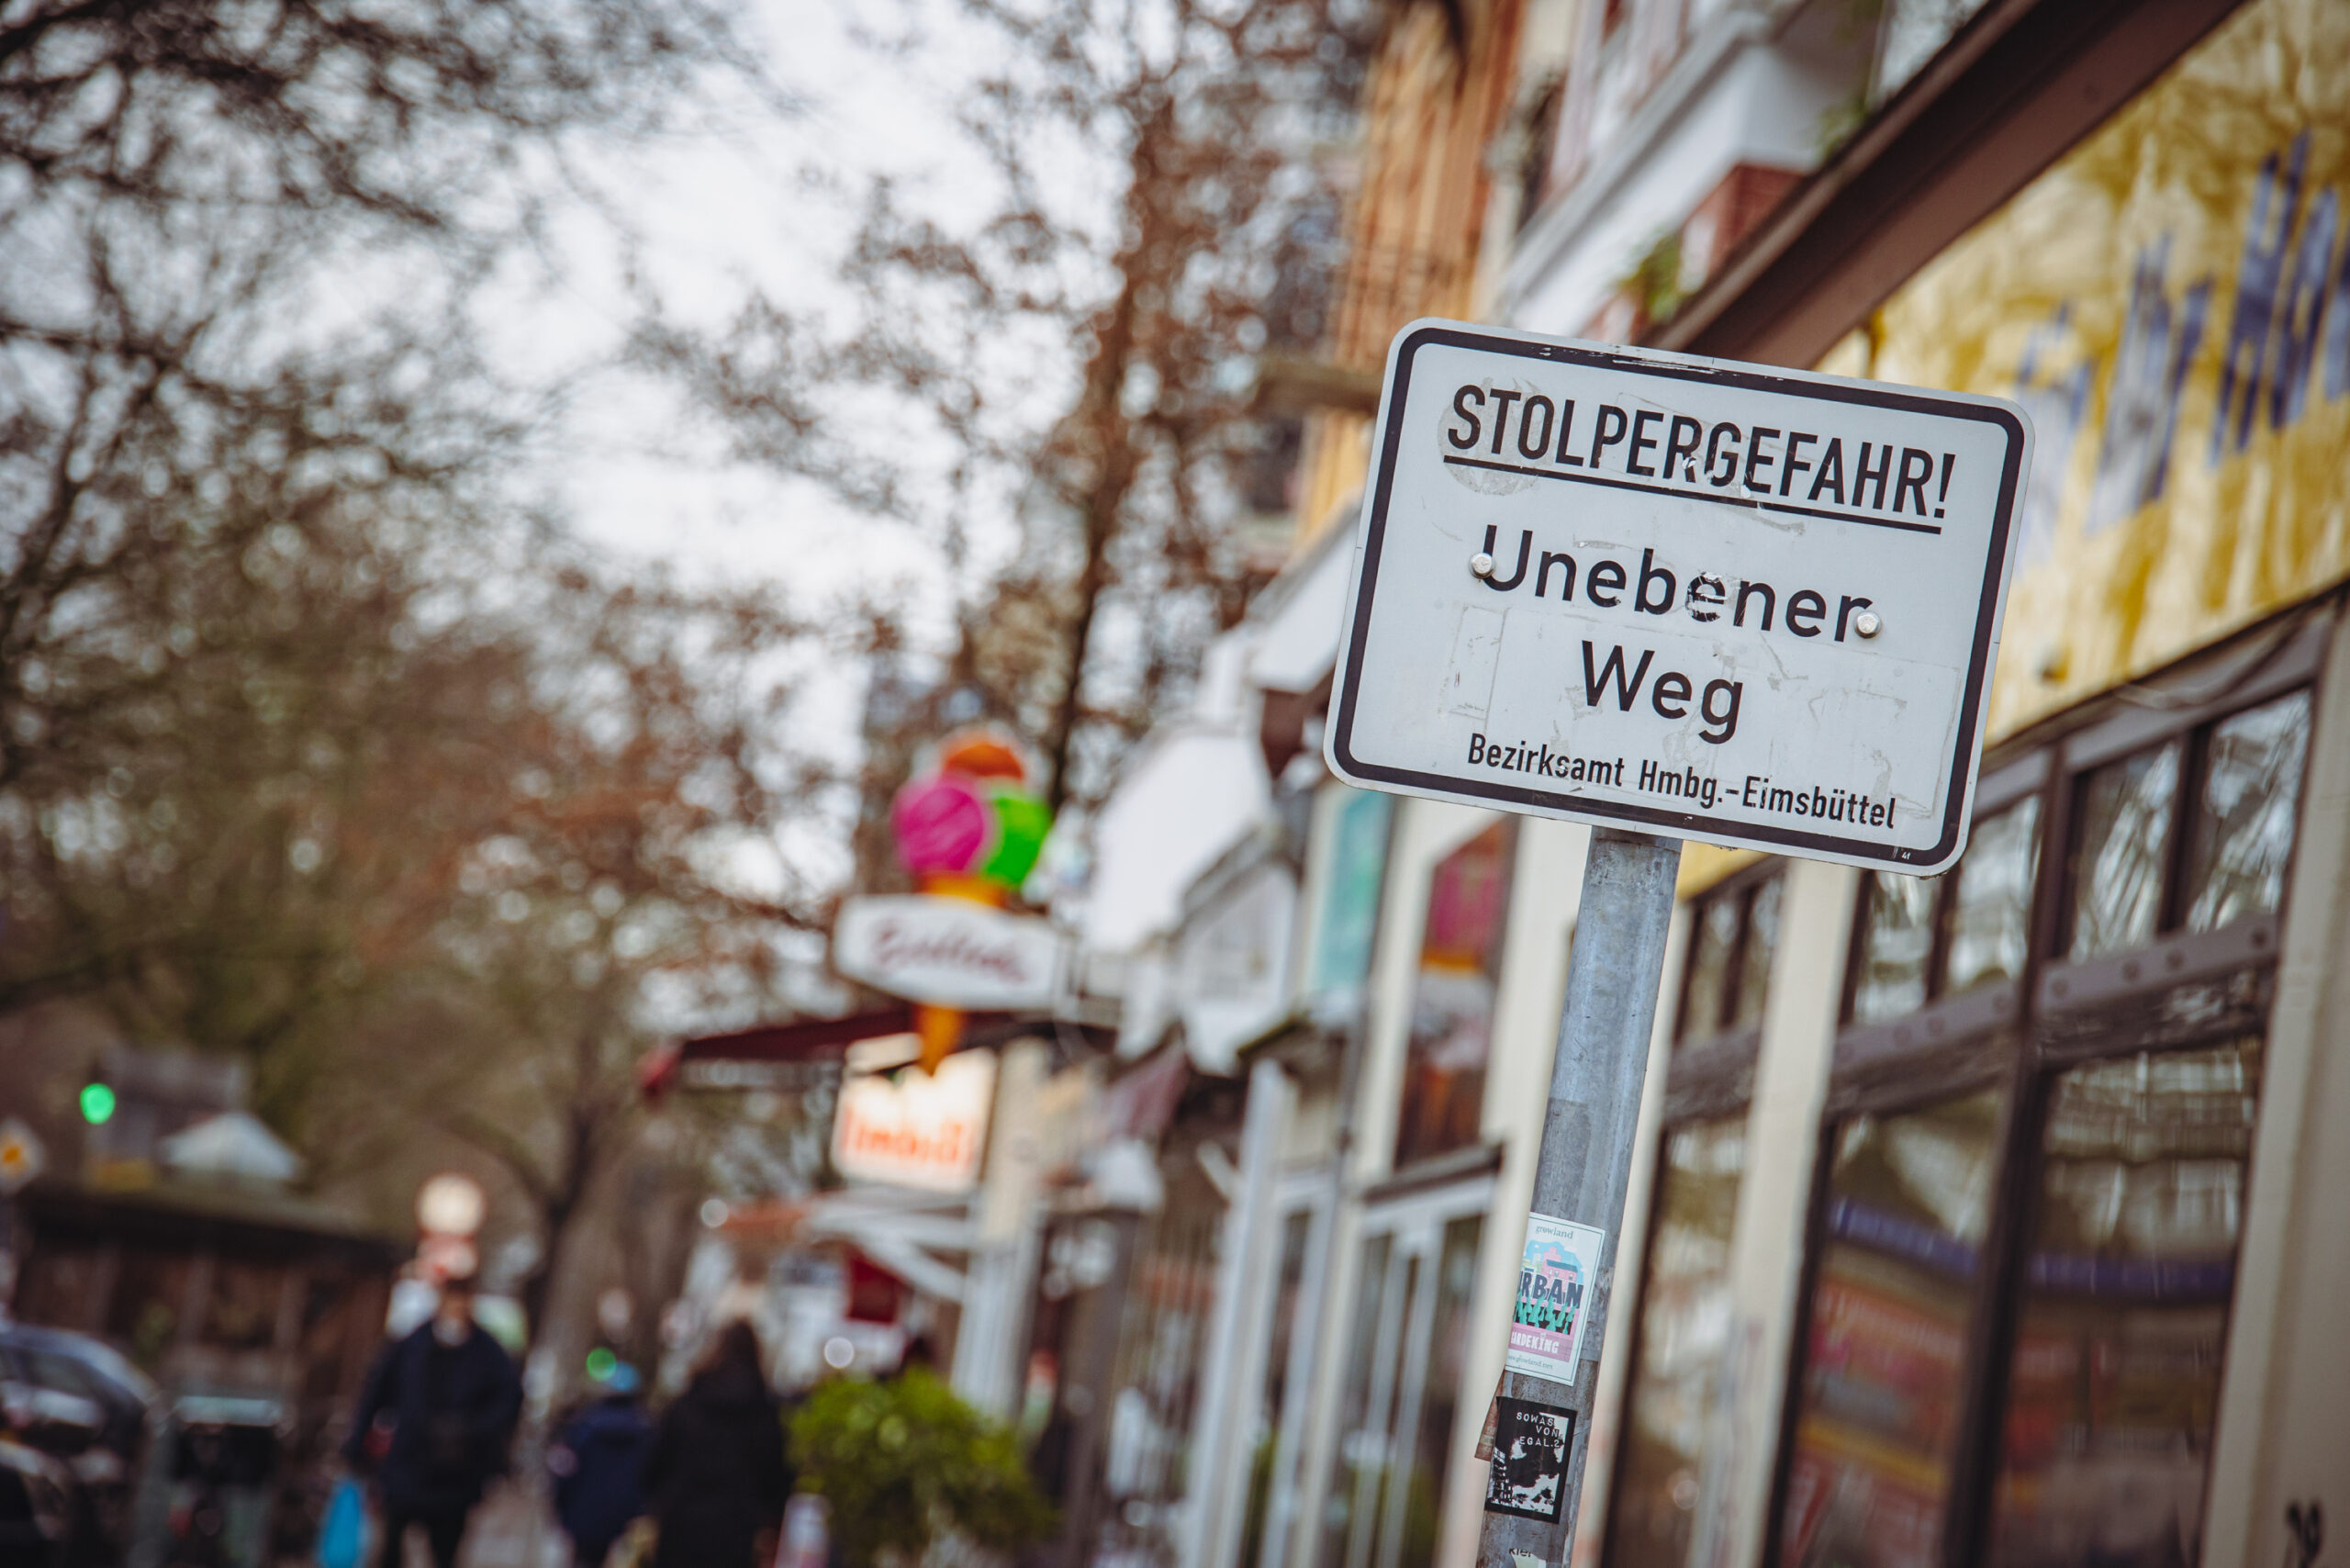 Das Schild „Stolpergefahr“ warnt vor dem unebenen Eppendorfer Weg.